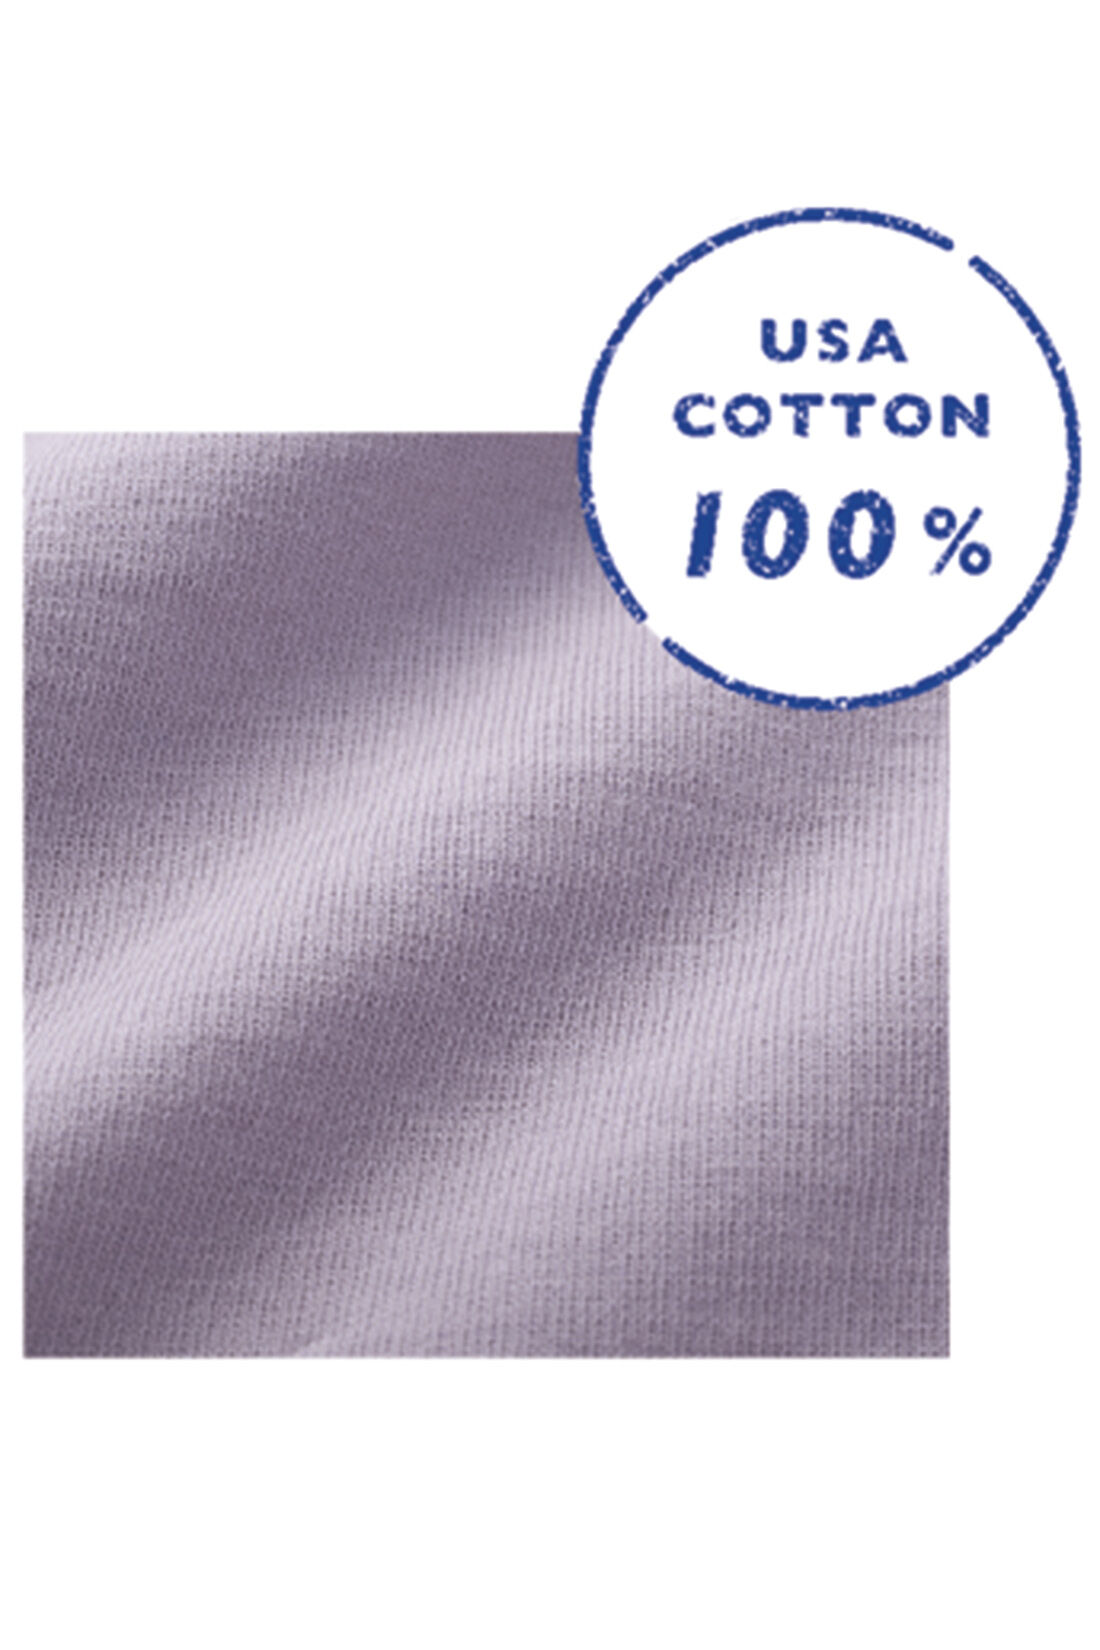 Live in  comfort|リブ イン コンフォート　USAコットン100% ざばっと着るだけらくちん半袖ワンピース〈スモークピンク〉|USAコットンの天じく素材。張り感があってからだのラインを拾わず、きれいな表面感。